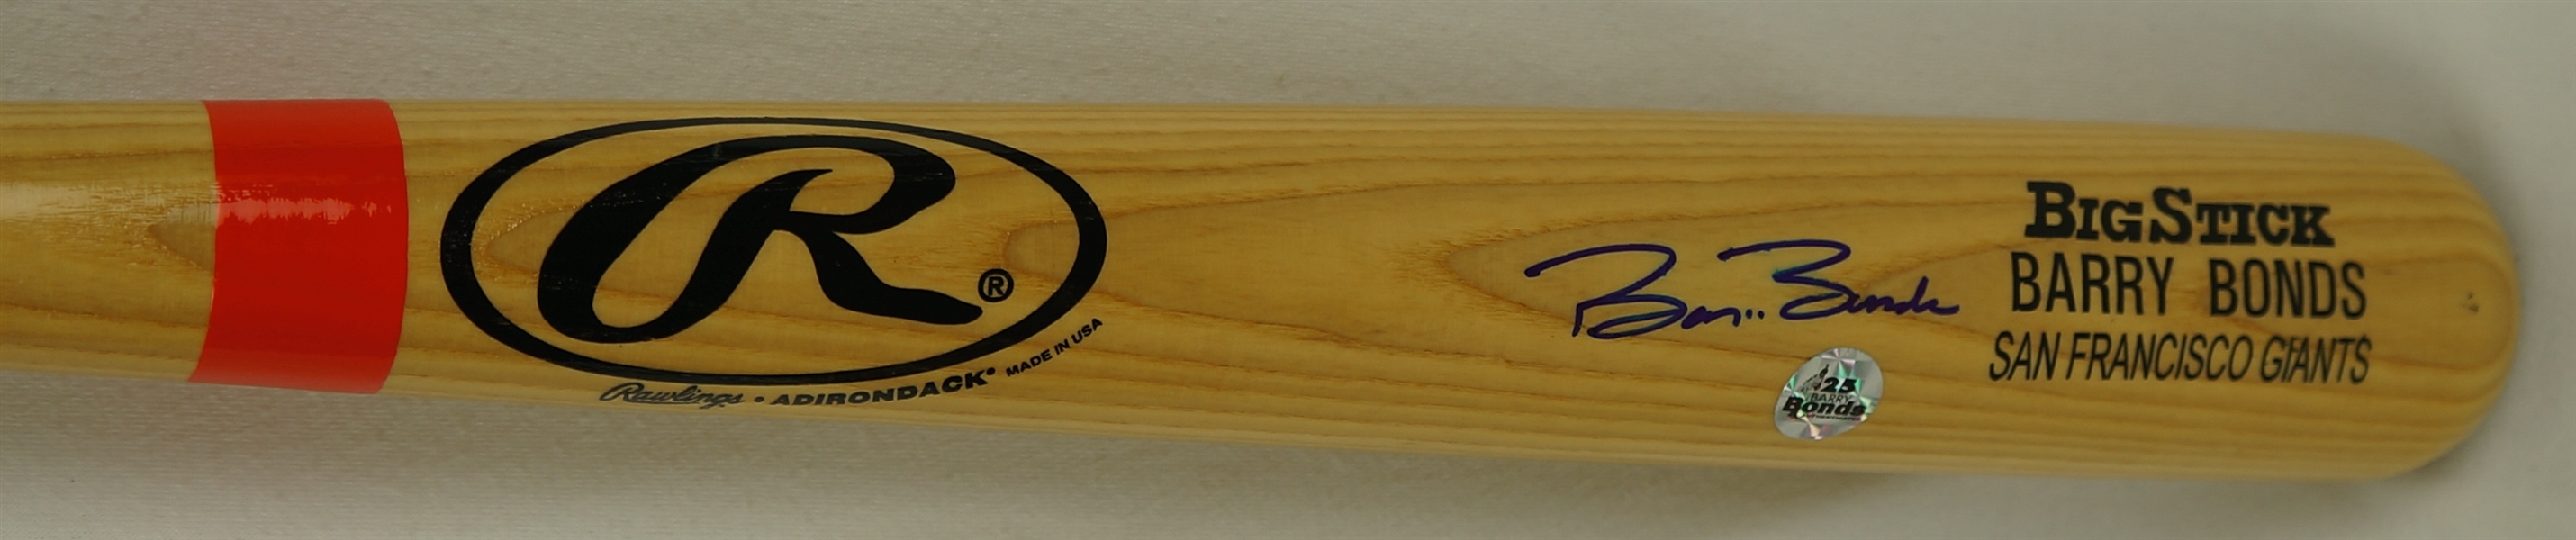 Barry Bonds Autographed Rawlings Big Stick Bat w/Bonds Authentication